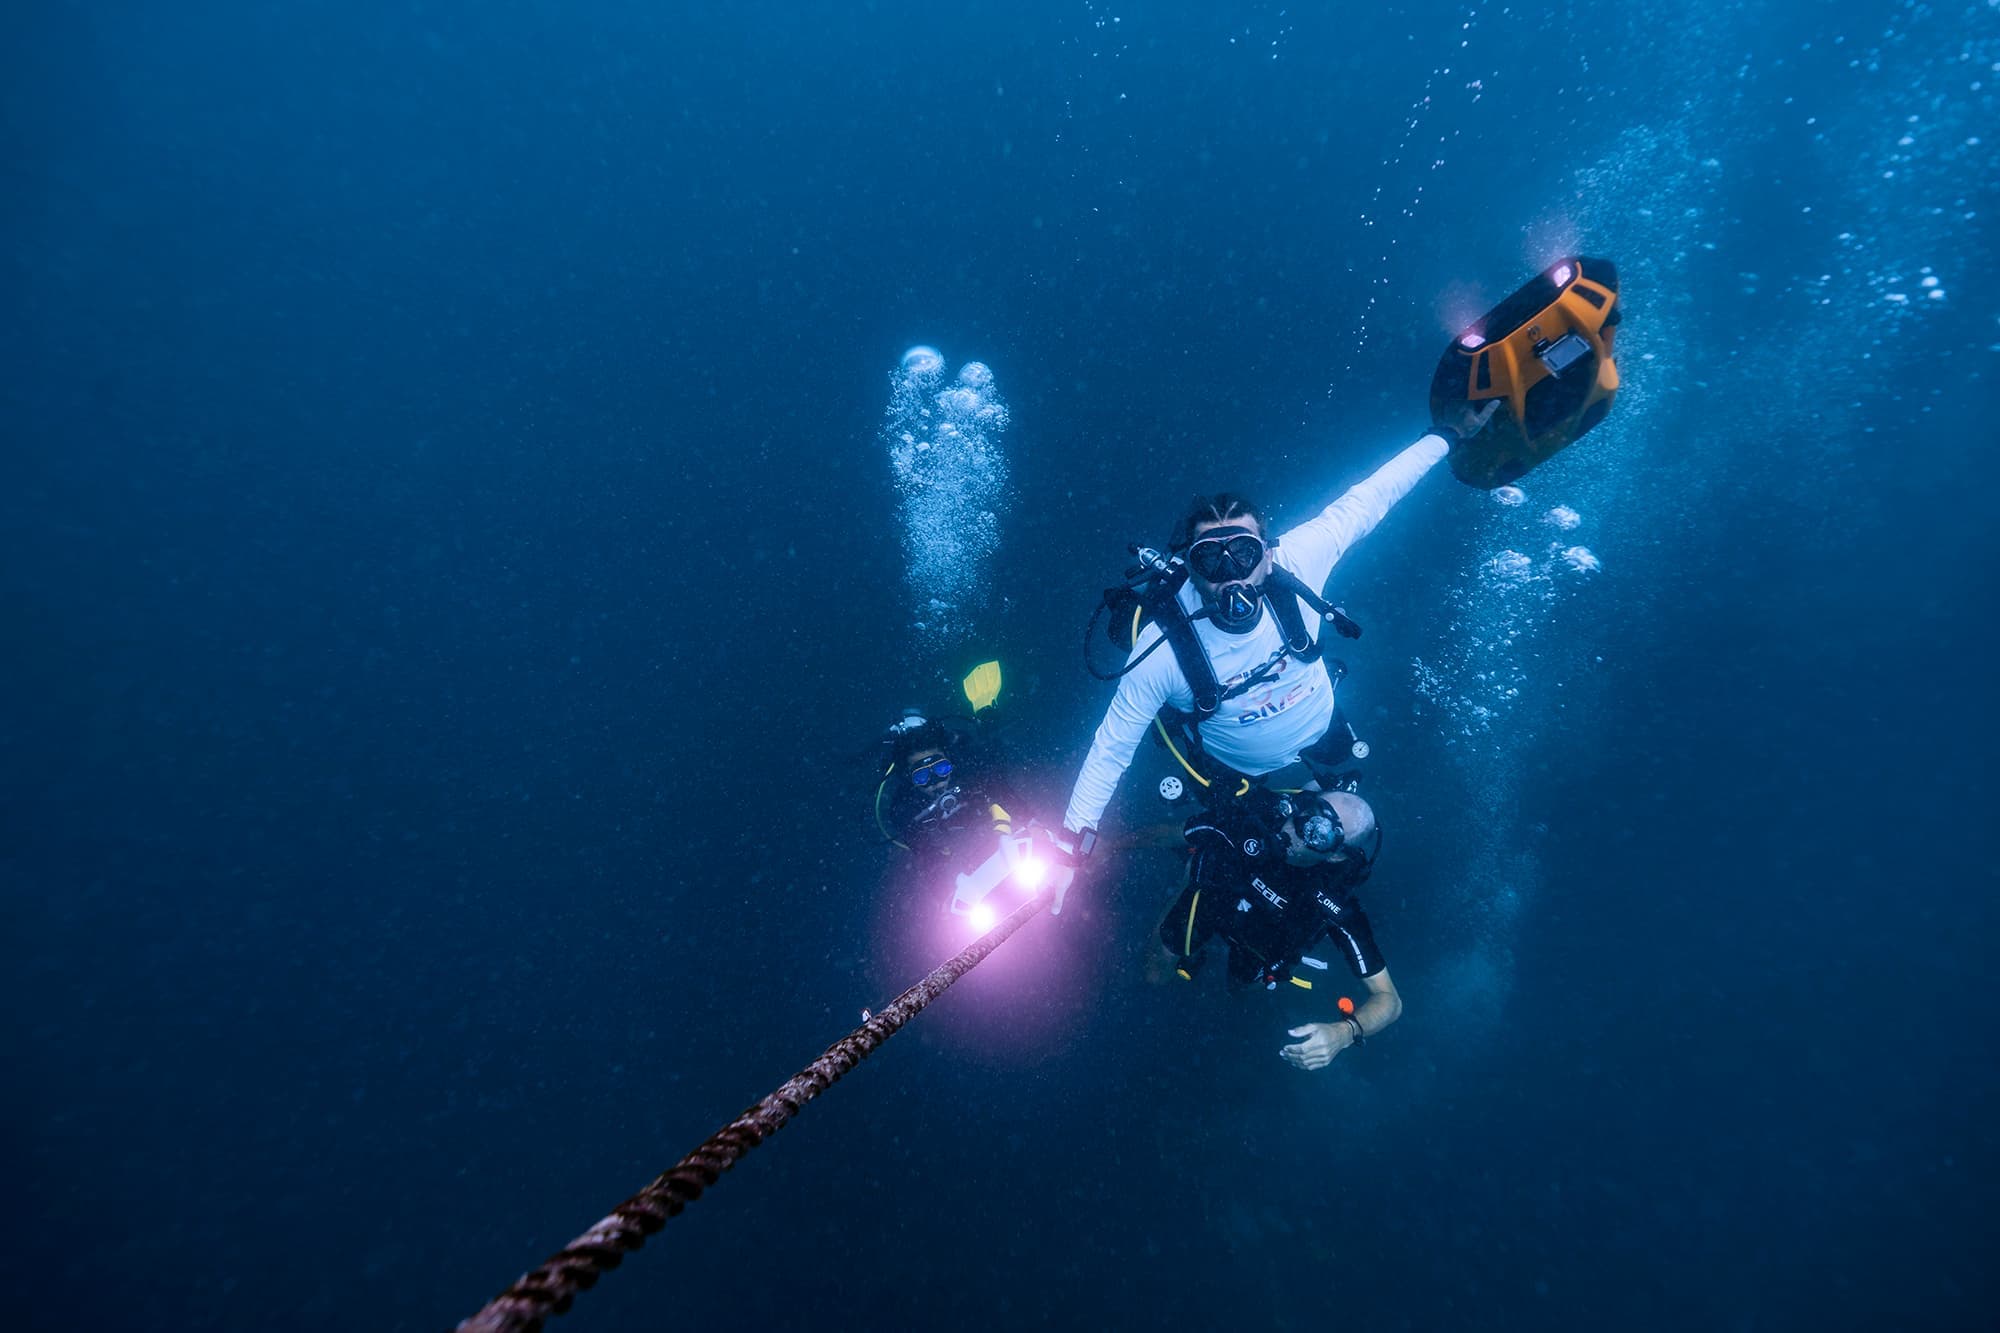 Płetwonurek ze skuterem nurkowym iAQUA eksplorujący ocean.